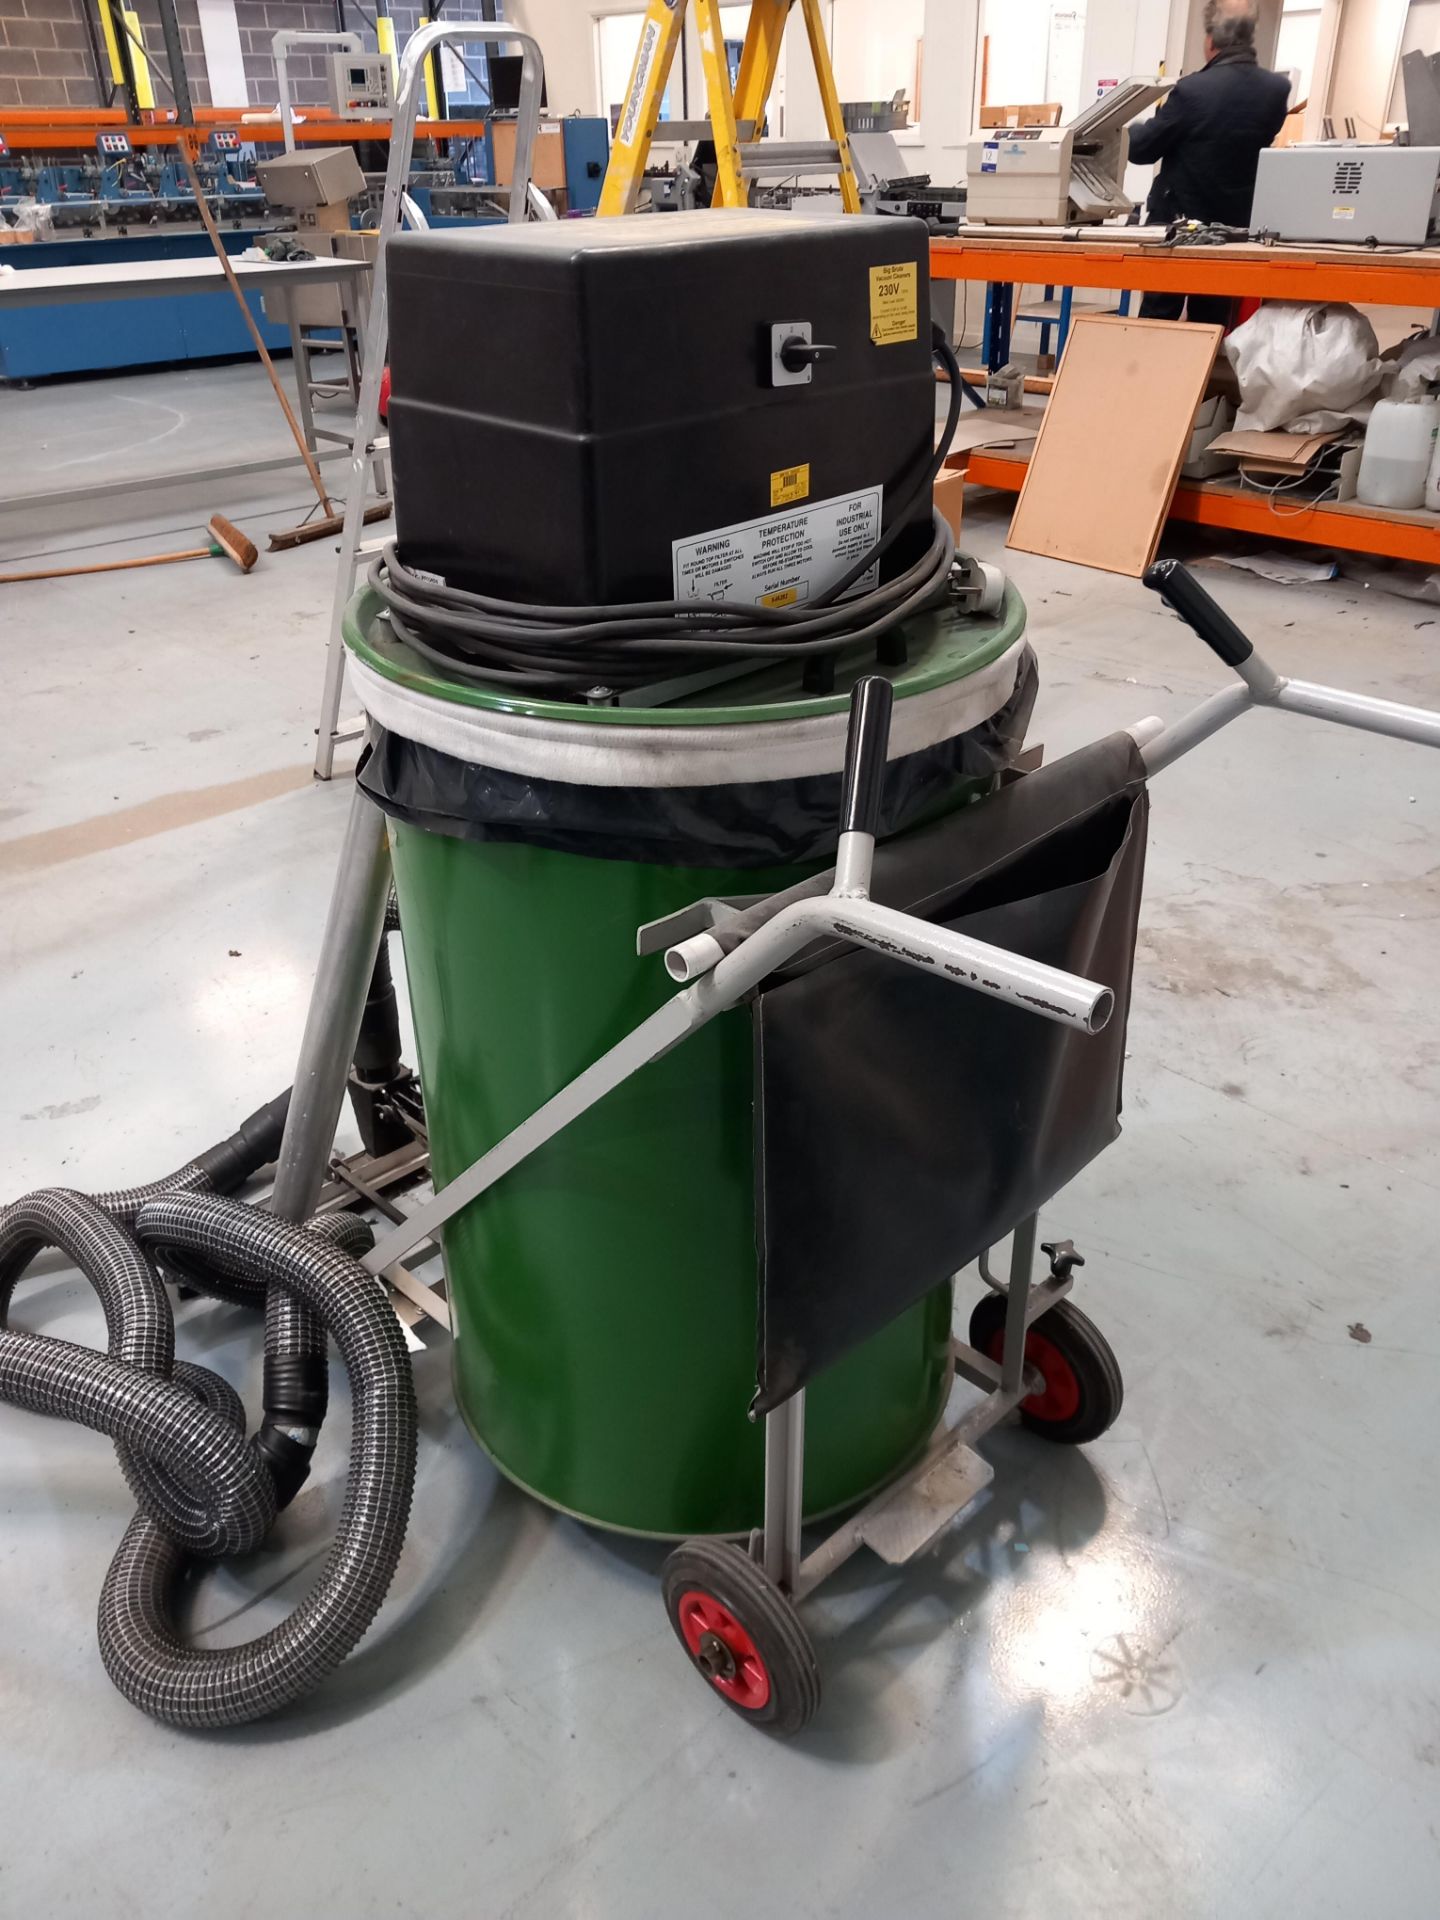 Big Brute industrial vacuum cleaner, serial number K46282 - Image 2 of 3